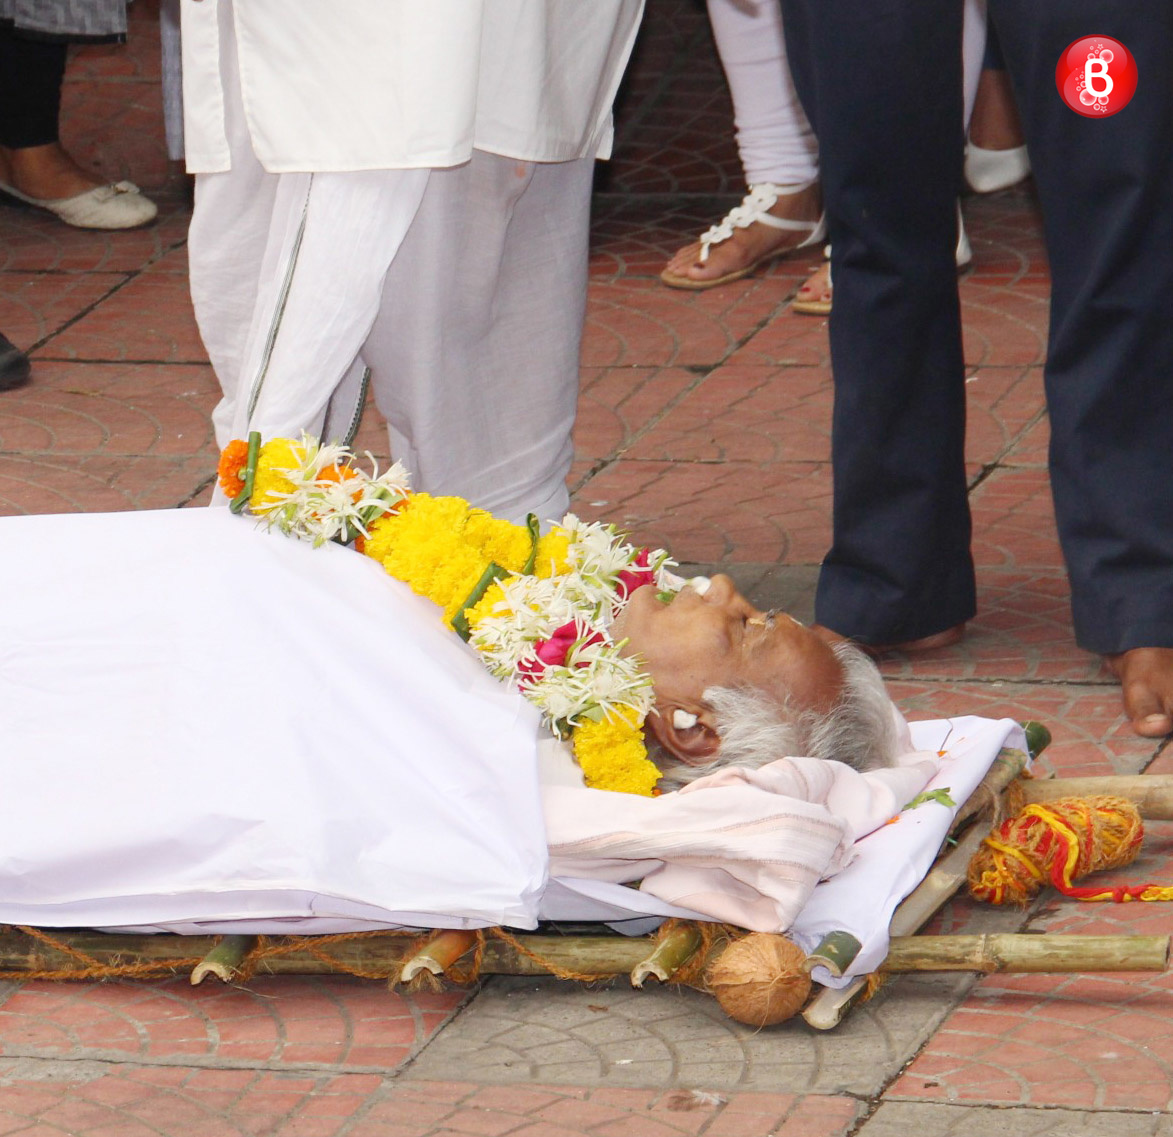 Kundan Shah passes away